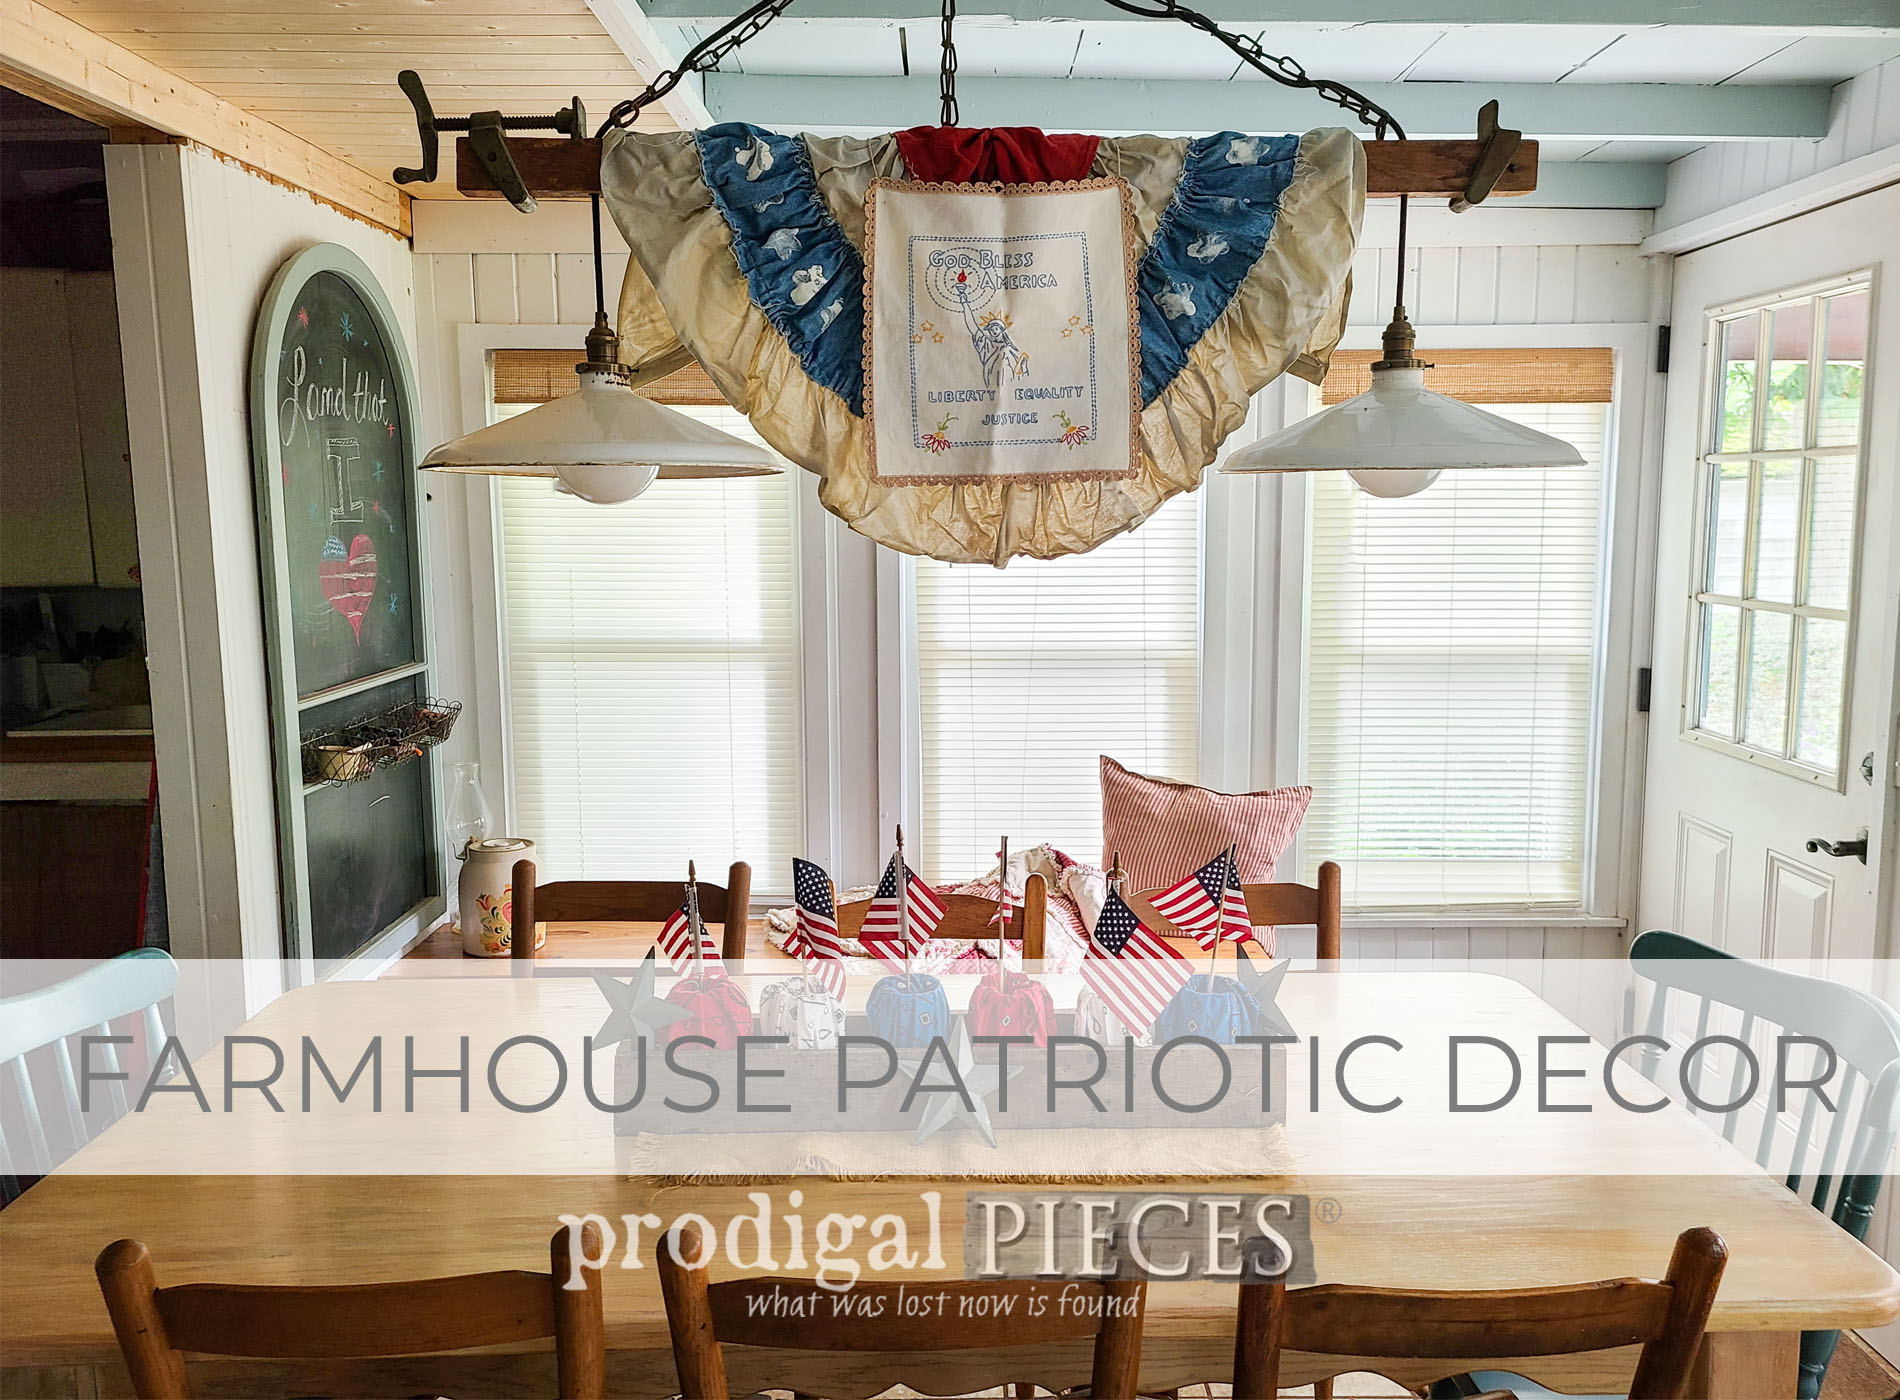 DIY Farmhouse Patriotic Decor from Refashioned Bandanas | prodigalpieces.com #prodigalpieces